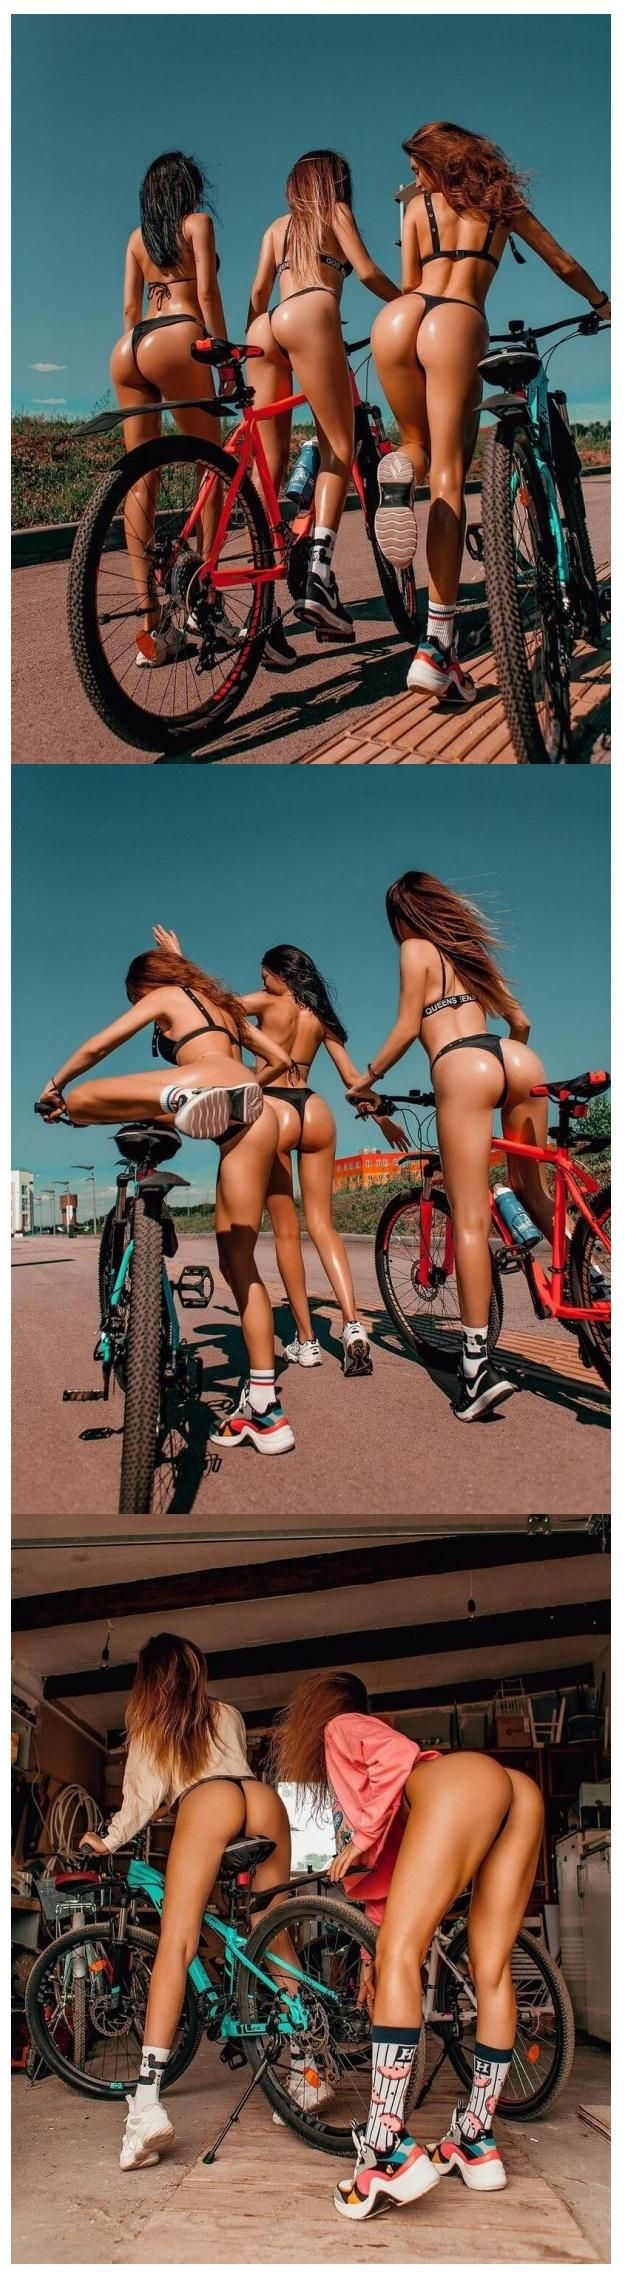 자전거 타는 처자들.jpg